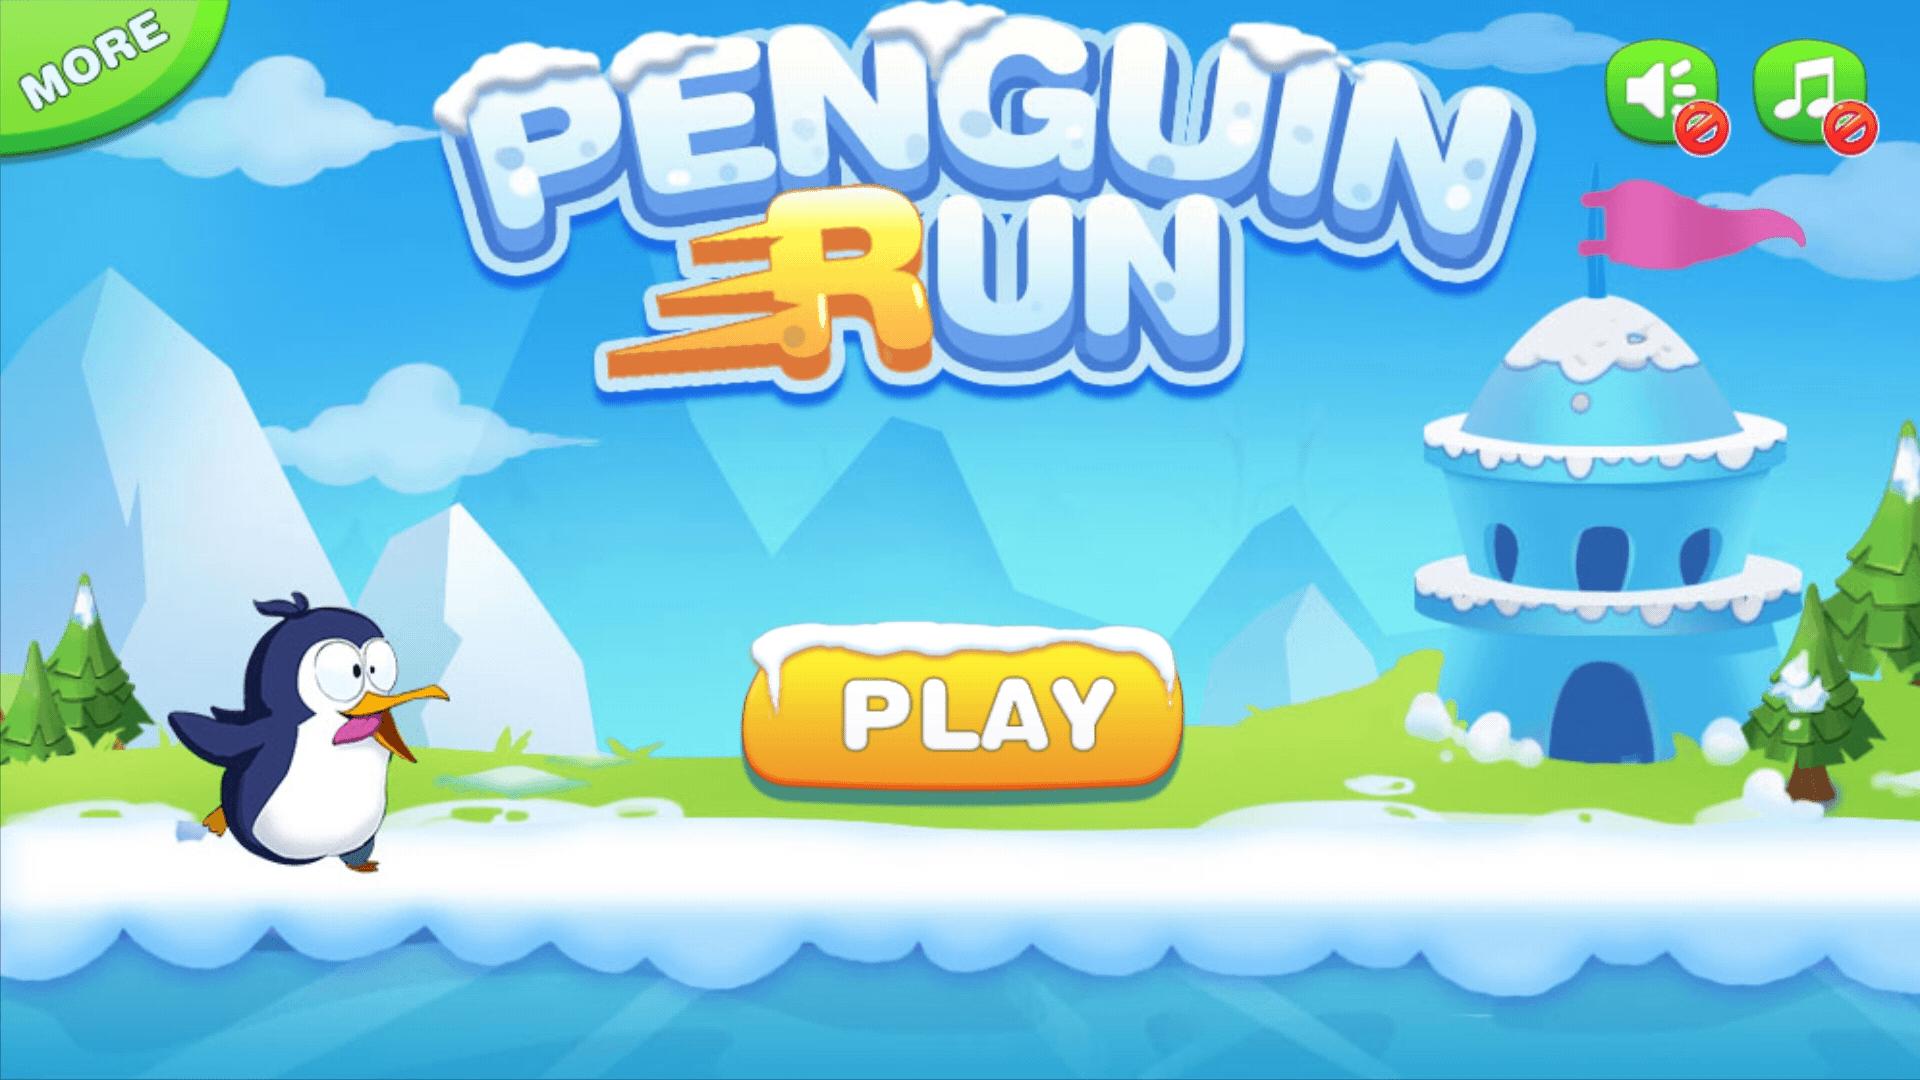 Penguin Run игра. Игра Пингвин Android. Игры с пингвинами для детей. Пингвин бежит. Игра пингвина битой